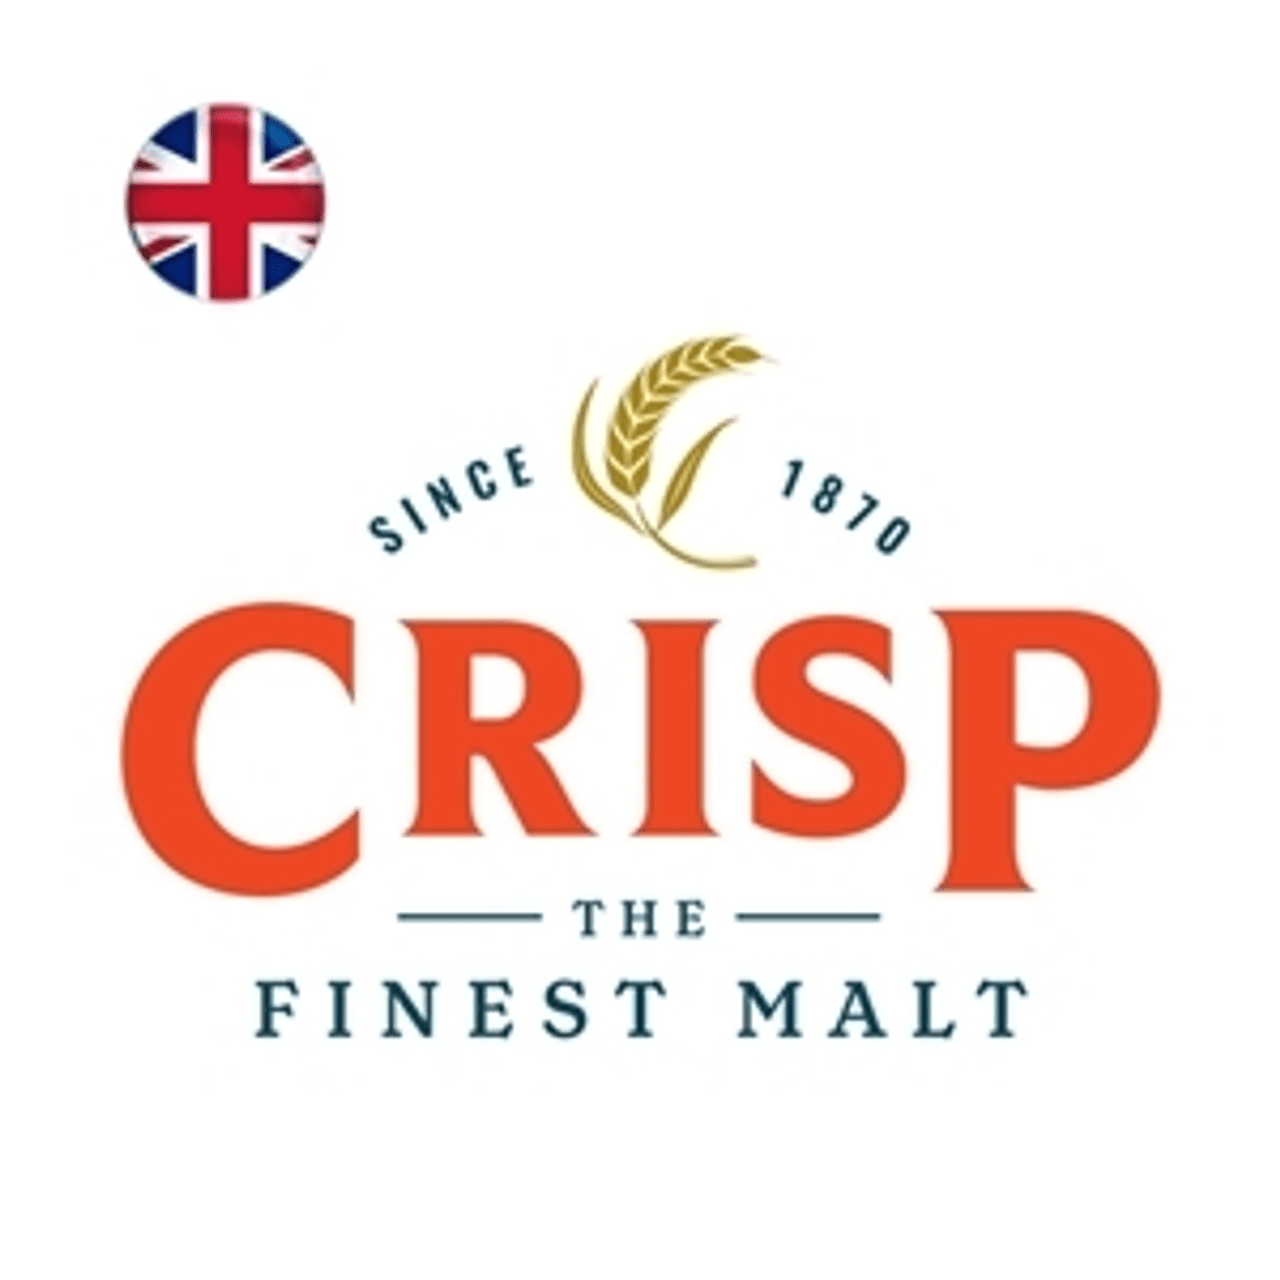 Crisp The Finest Malt